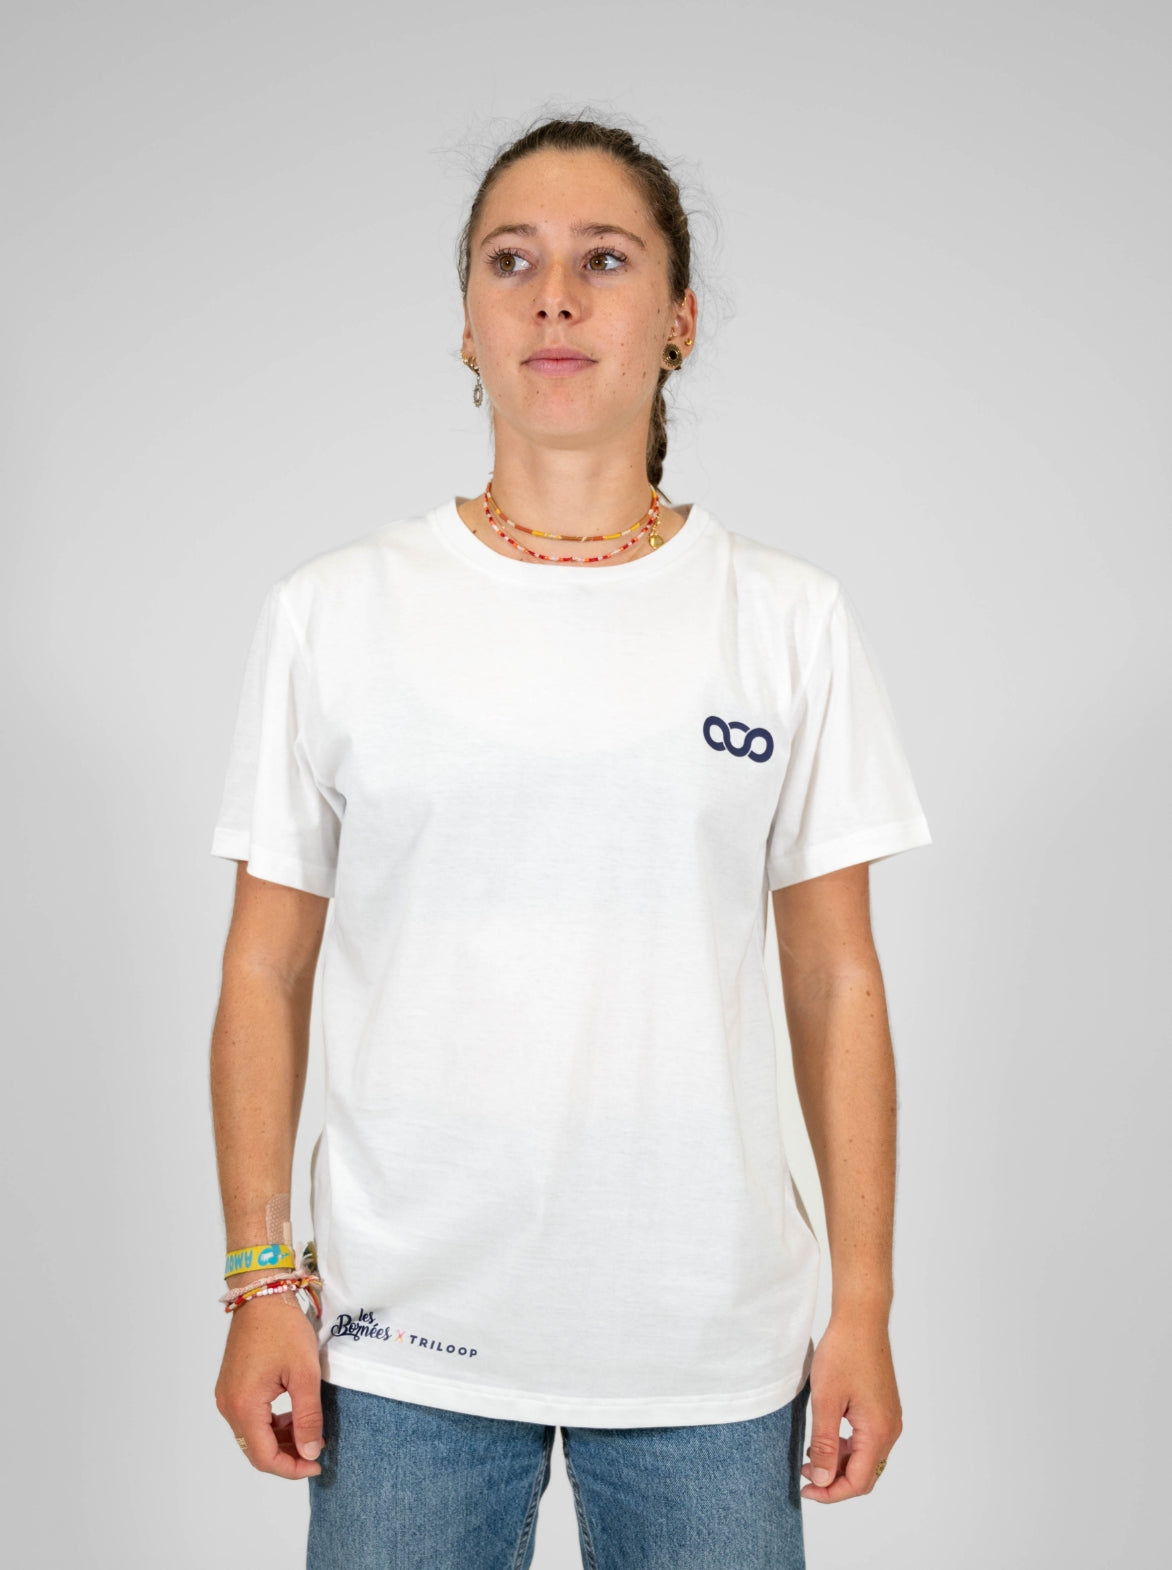 T-shirt coton Femme Made in France et Bio — Les Bornées